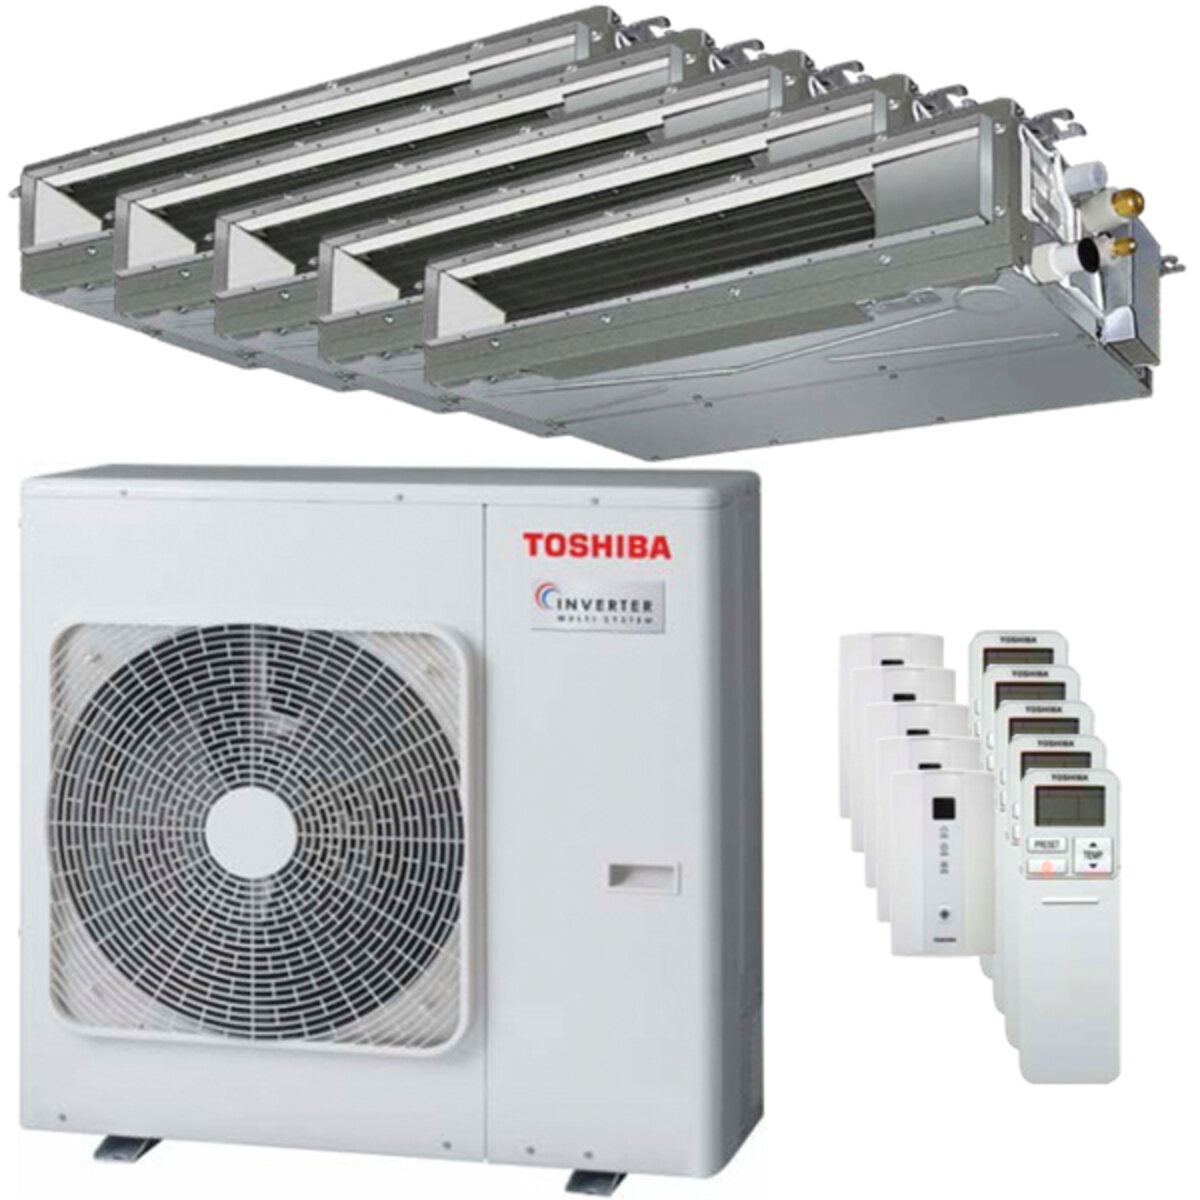 Toshiba Ductable Air Conditioner U2 Penta Split 7000 + 9000 + 9000 + 12000 + 12000 BTU Inverter A++ Außengerät 10,0 kW